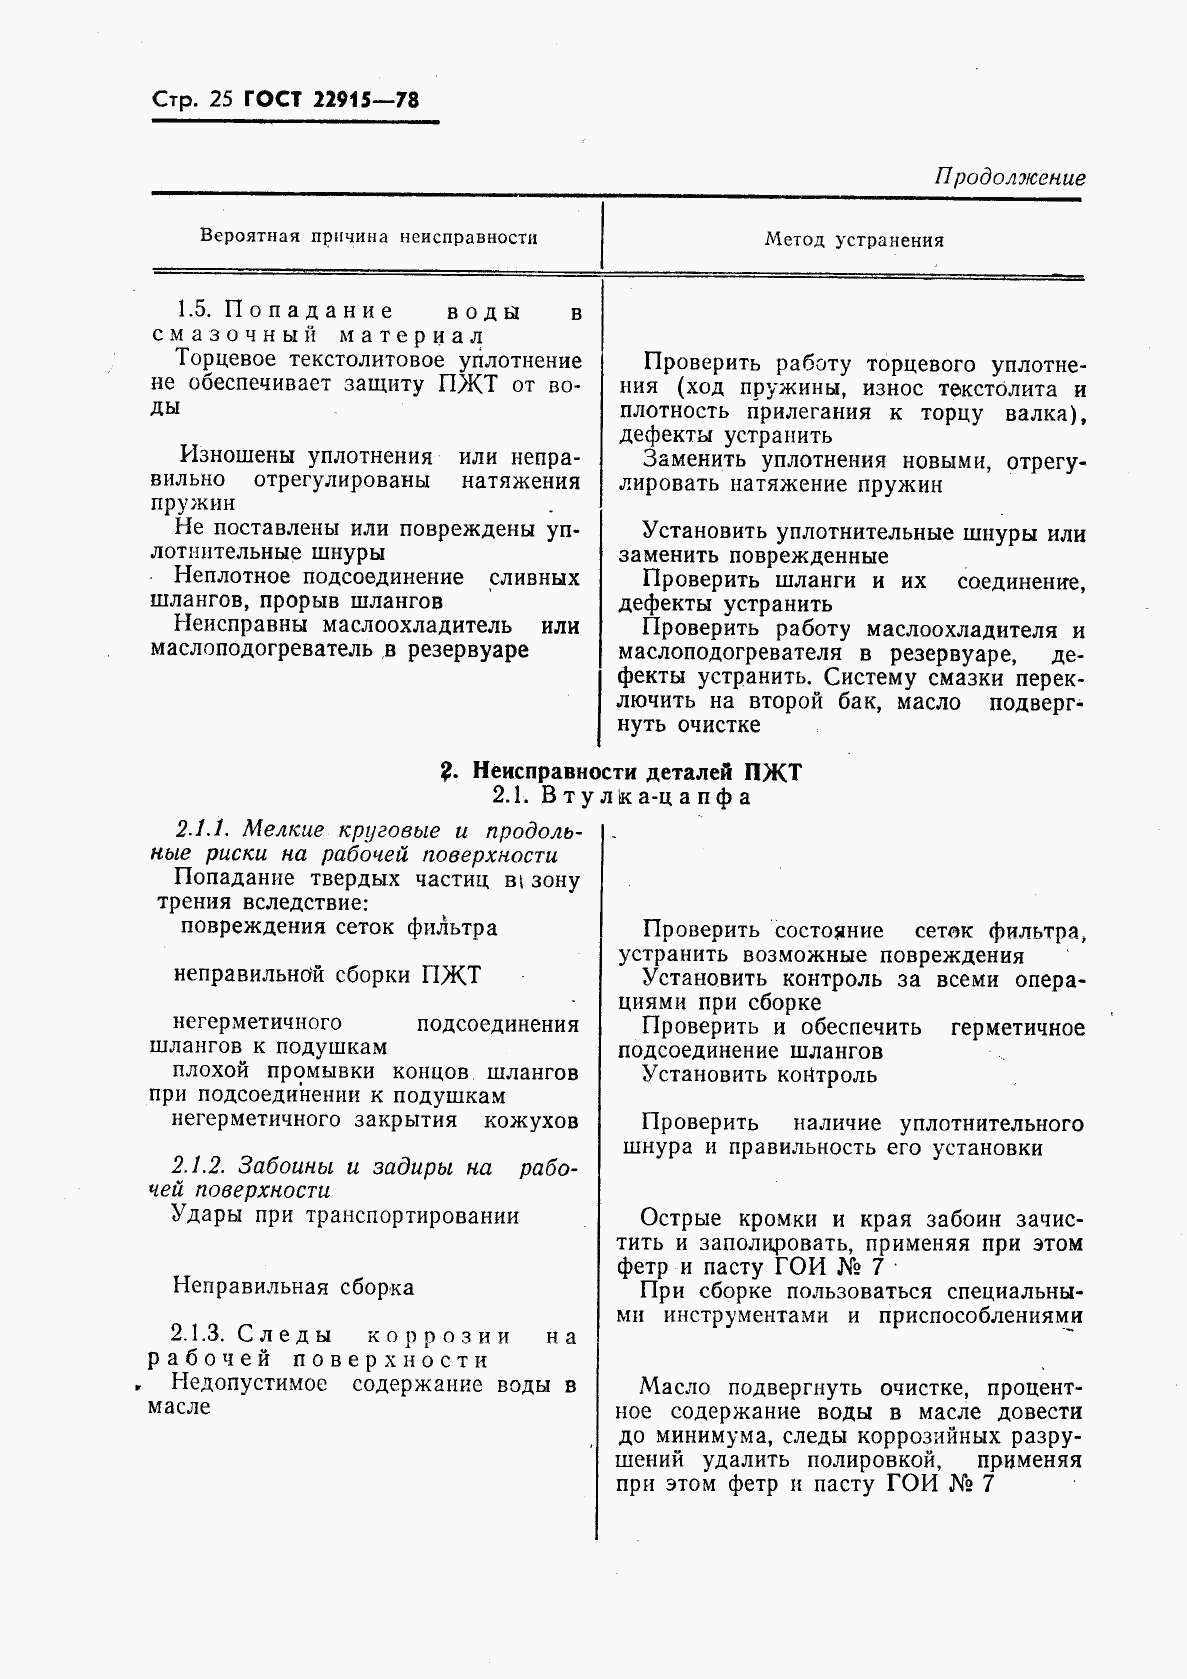 ГОСТ 22915-78, страница 26